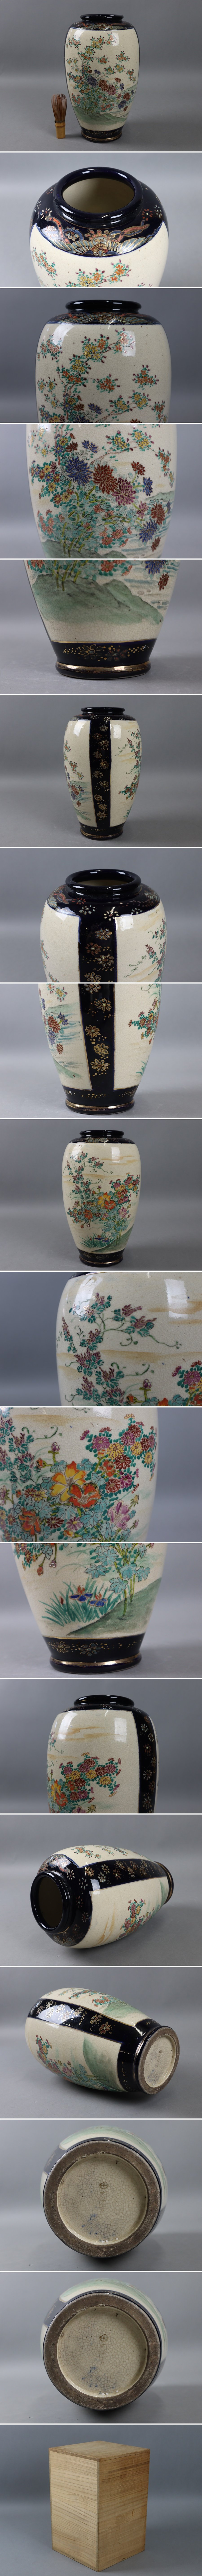 最終販売時代物 薩摩焼 瑠璃釉 花紋 花瓶 高31cm 明治期 花器 箱付 細密細工 古美術品[a1378] 薩摩